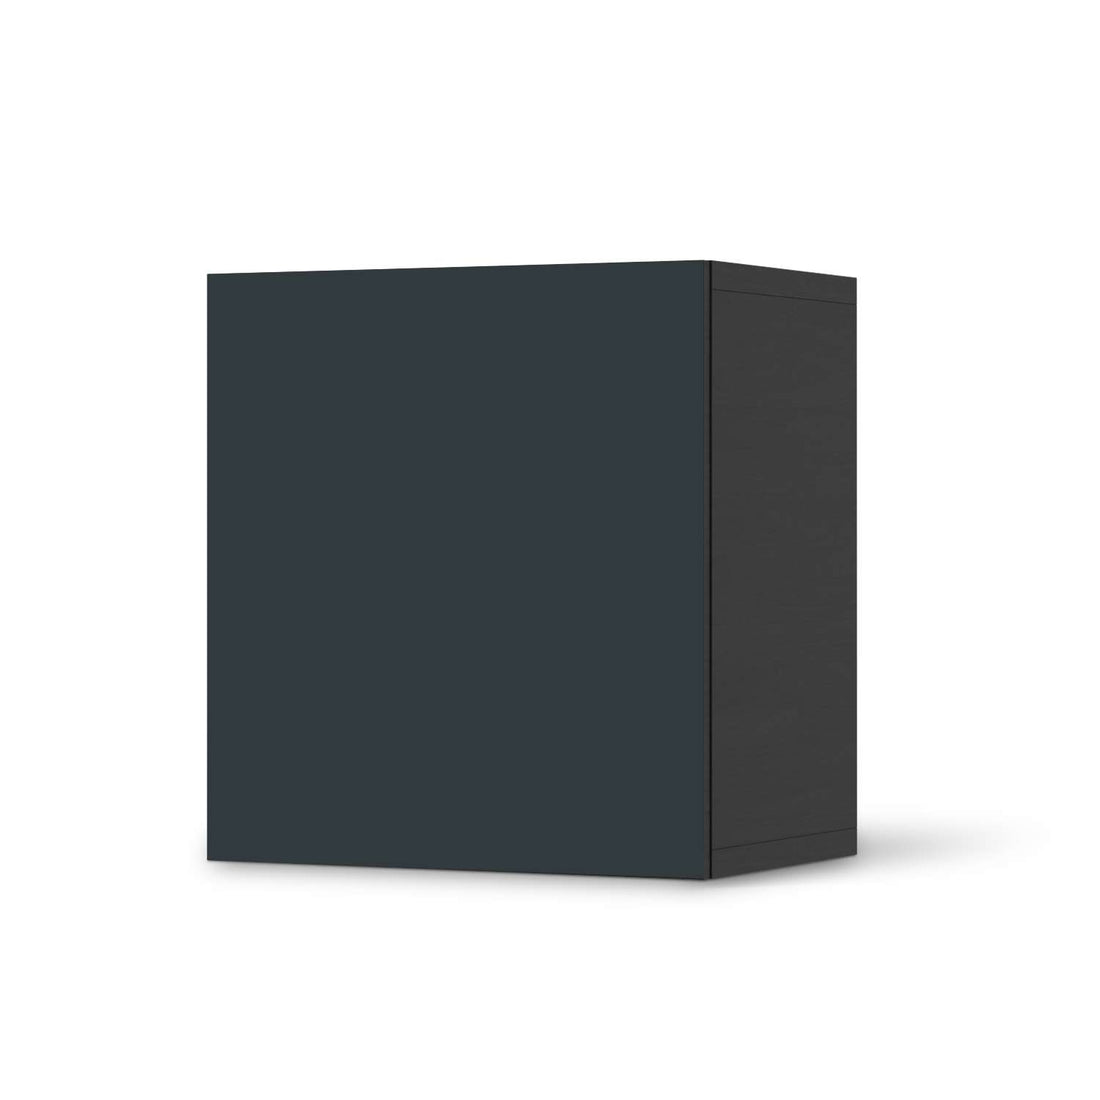 Klebefolie für Möbel Blaugrau Dark - IKEA Besta Regal 1 Türe - schwarz